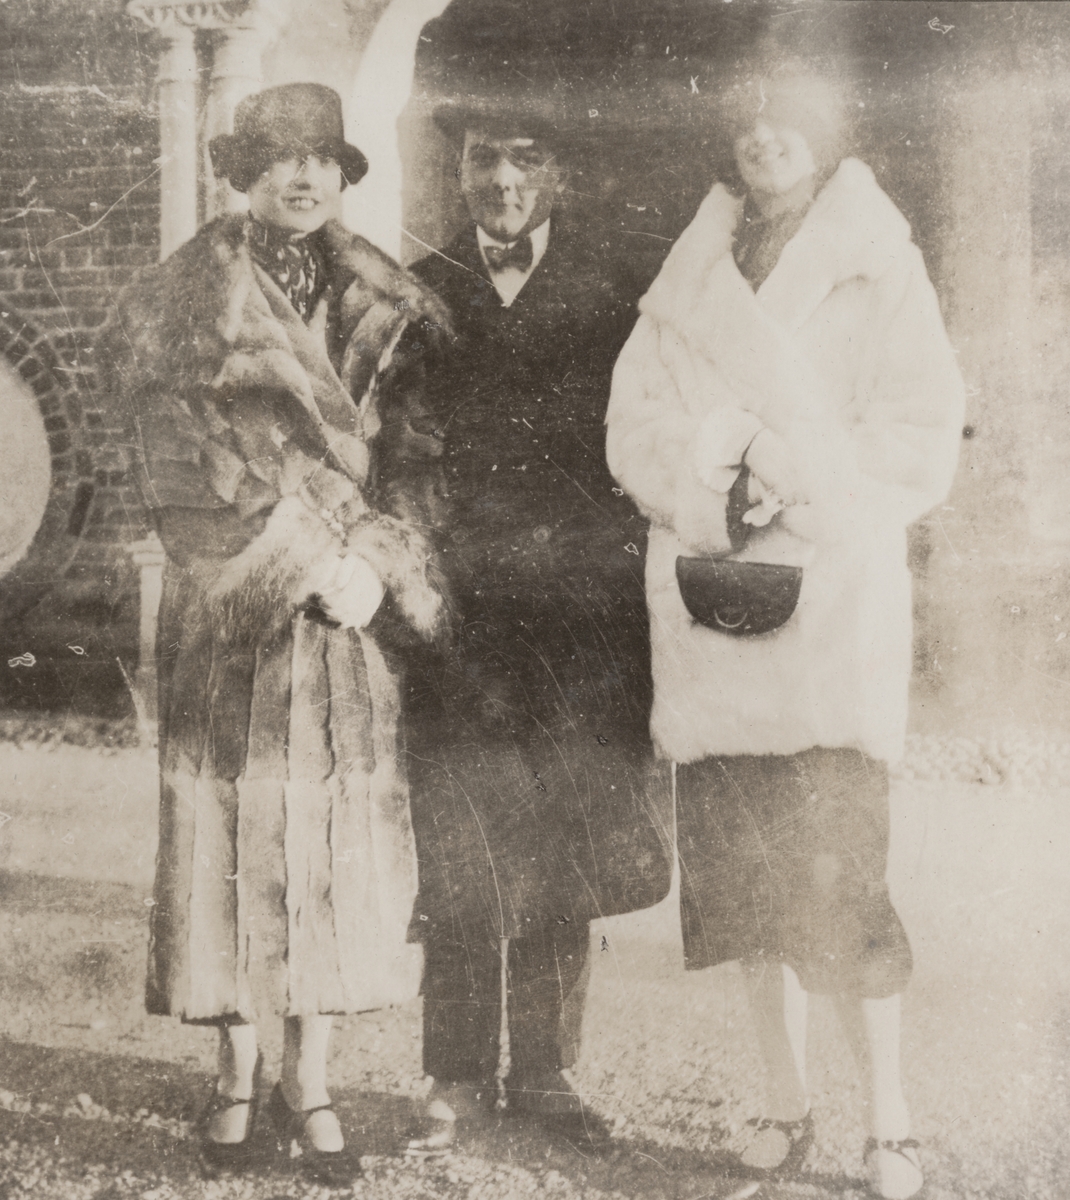 Grupporträtt. Från vänster Anna Linderstam, militären Nils Kindberg samt okänd kvinna utanför byggnad i Strängnäs 1925.

Text i album: "Jan. 1925. Strängnäs. Annika. NK. Muffsie."